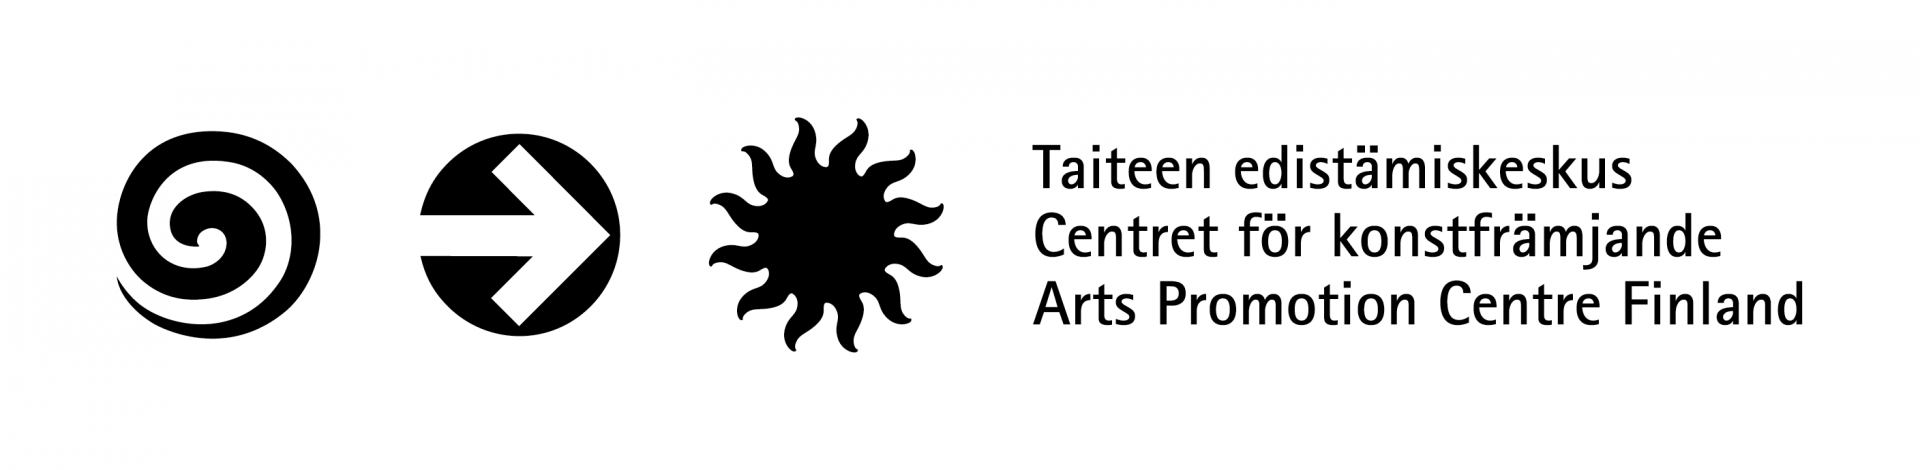 Logotyp för Centret för konstfrämjande. Till vänster om logotypen finns tre cirkelformade symboler; en spiral, en pil som pekar åt höger och en svart sol. Efter symbolerna står centrets namn på tre språk ovanpå varandra: Taiteen edistämiskeskus, Centret för konstfrämjande och Arts Promotion Centre Finland.